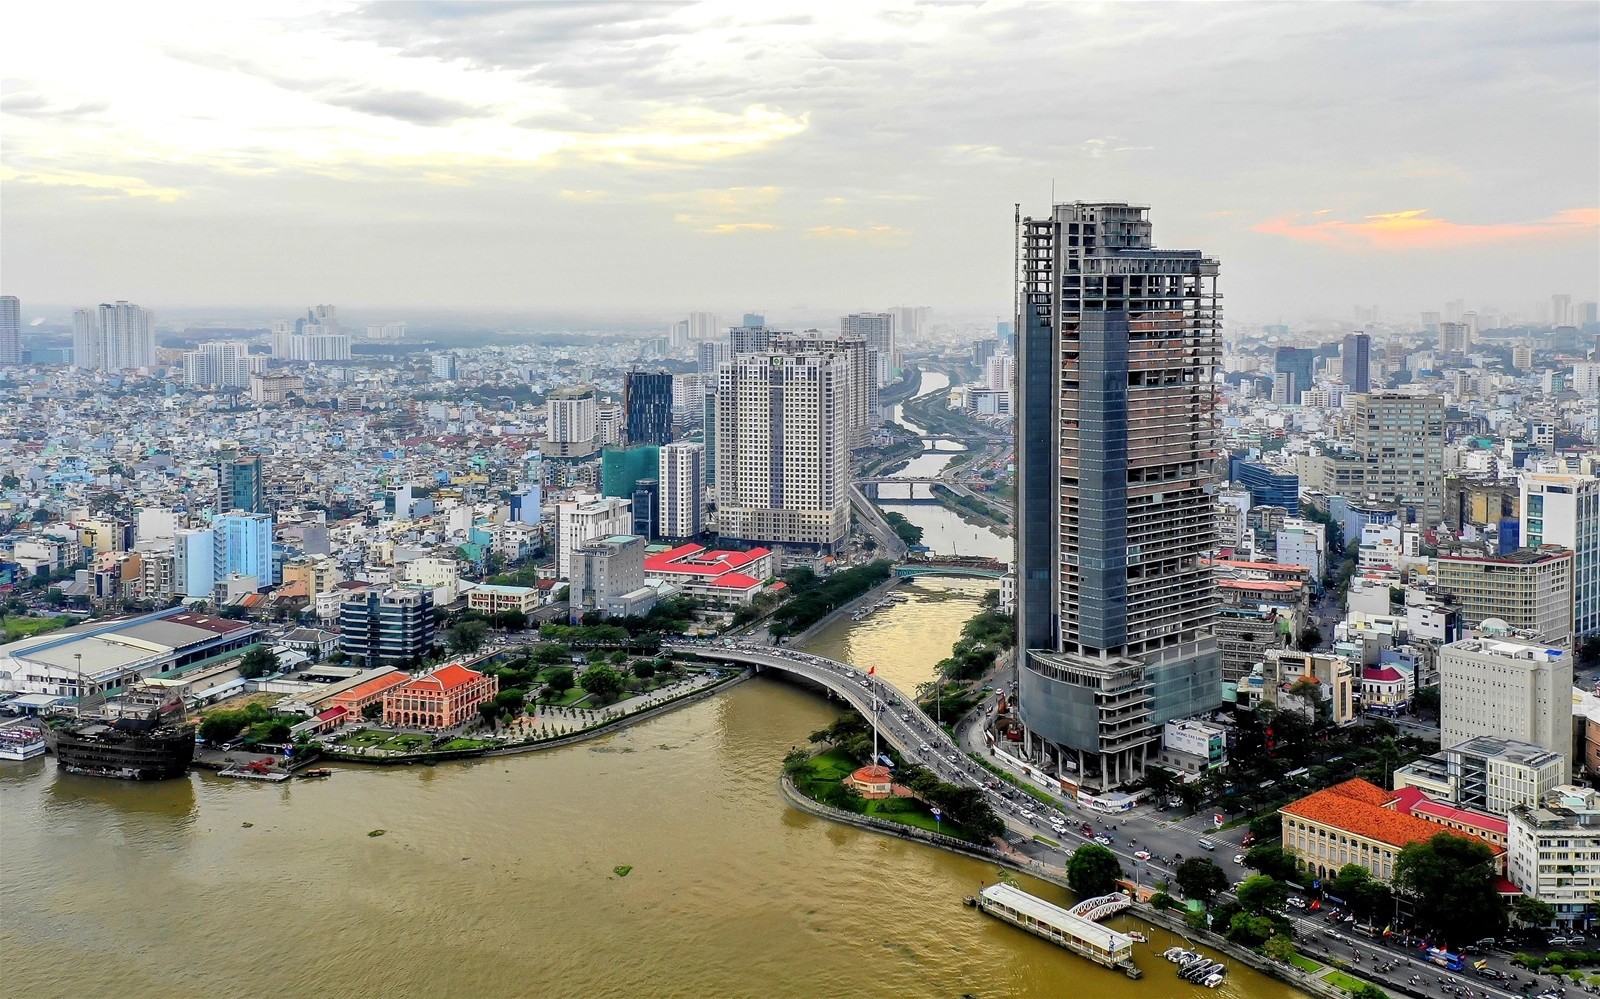 
Thị trường bất động sản Việt Nam khó lặp lại kịch bản khủng hoảng như 10 năm về trước
